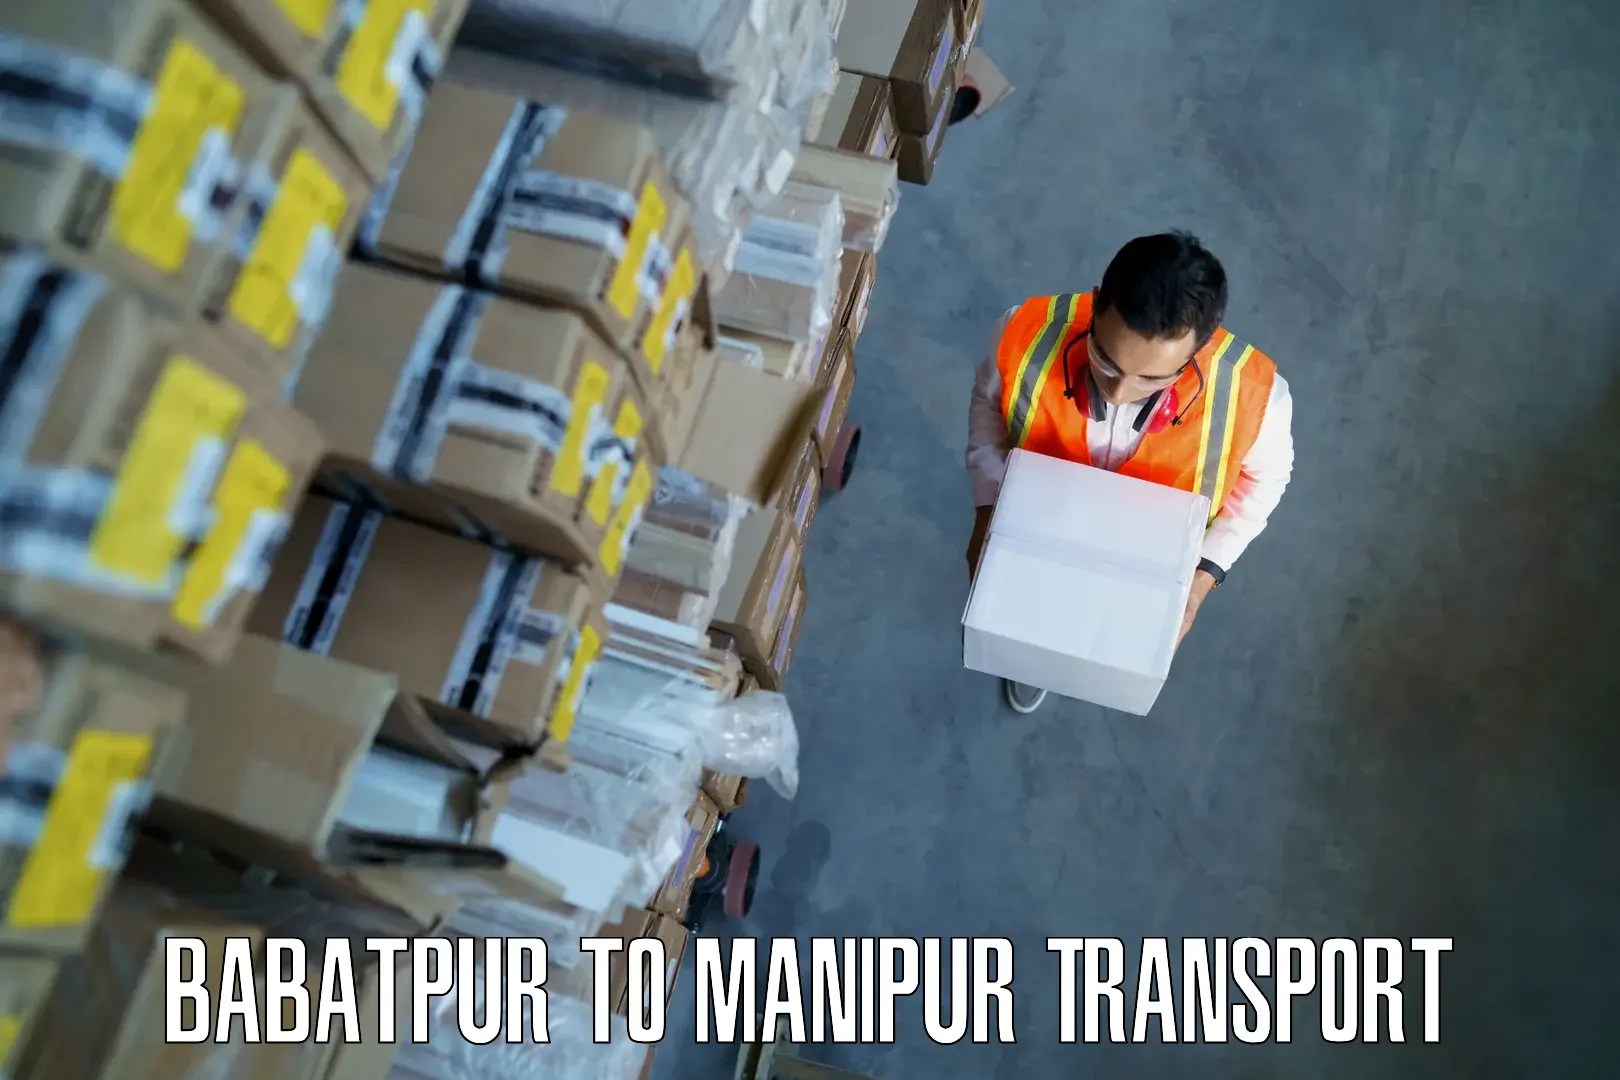 Bike shipping service Babatpur to Manipur